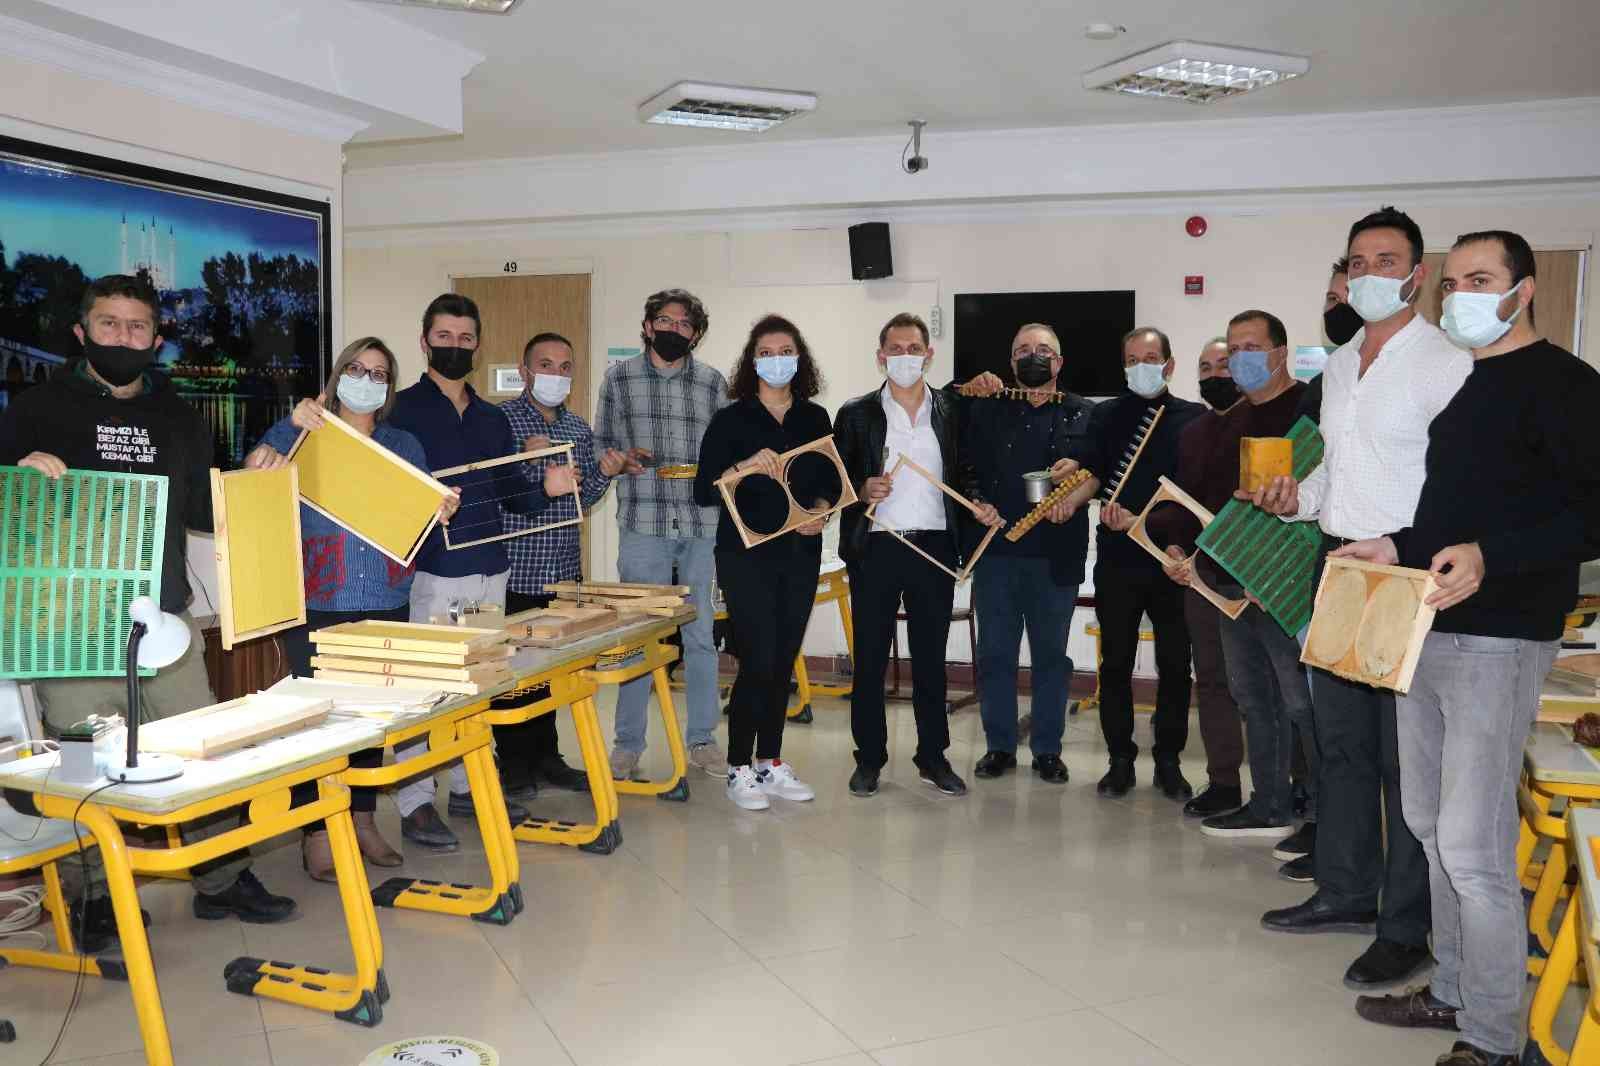 Edirne’de arıcılık kurslarına talep arttı #edirne